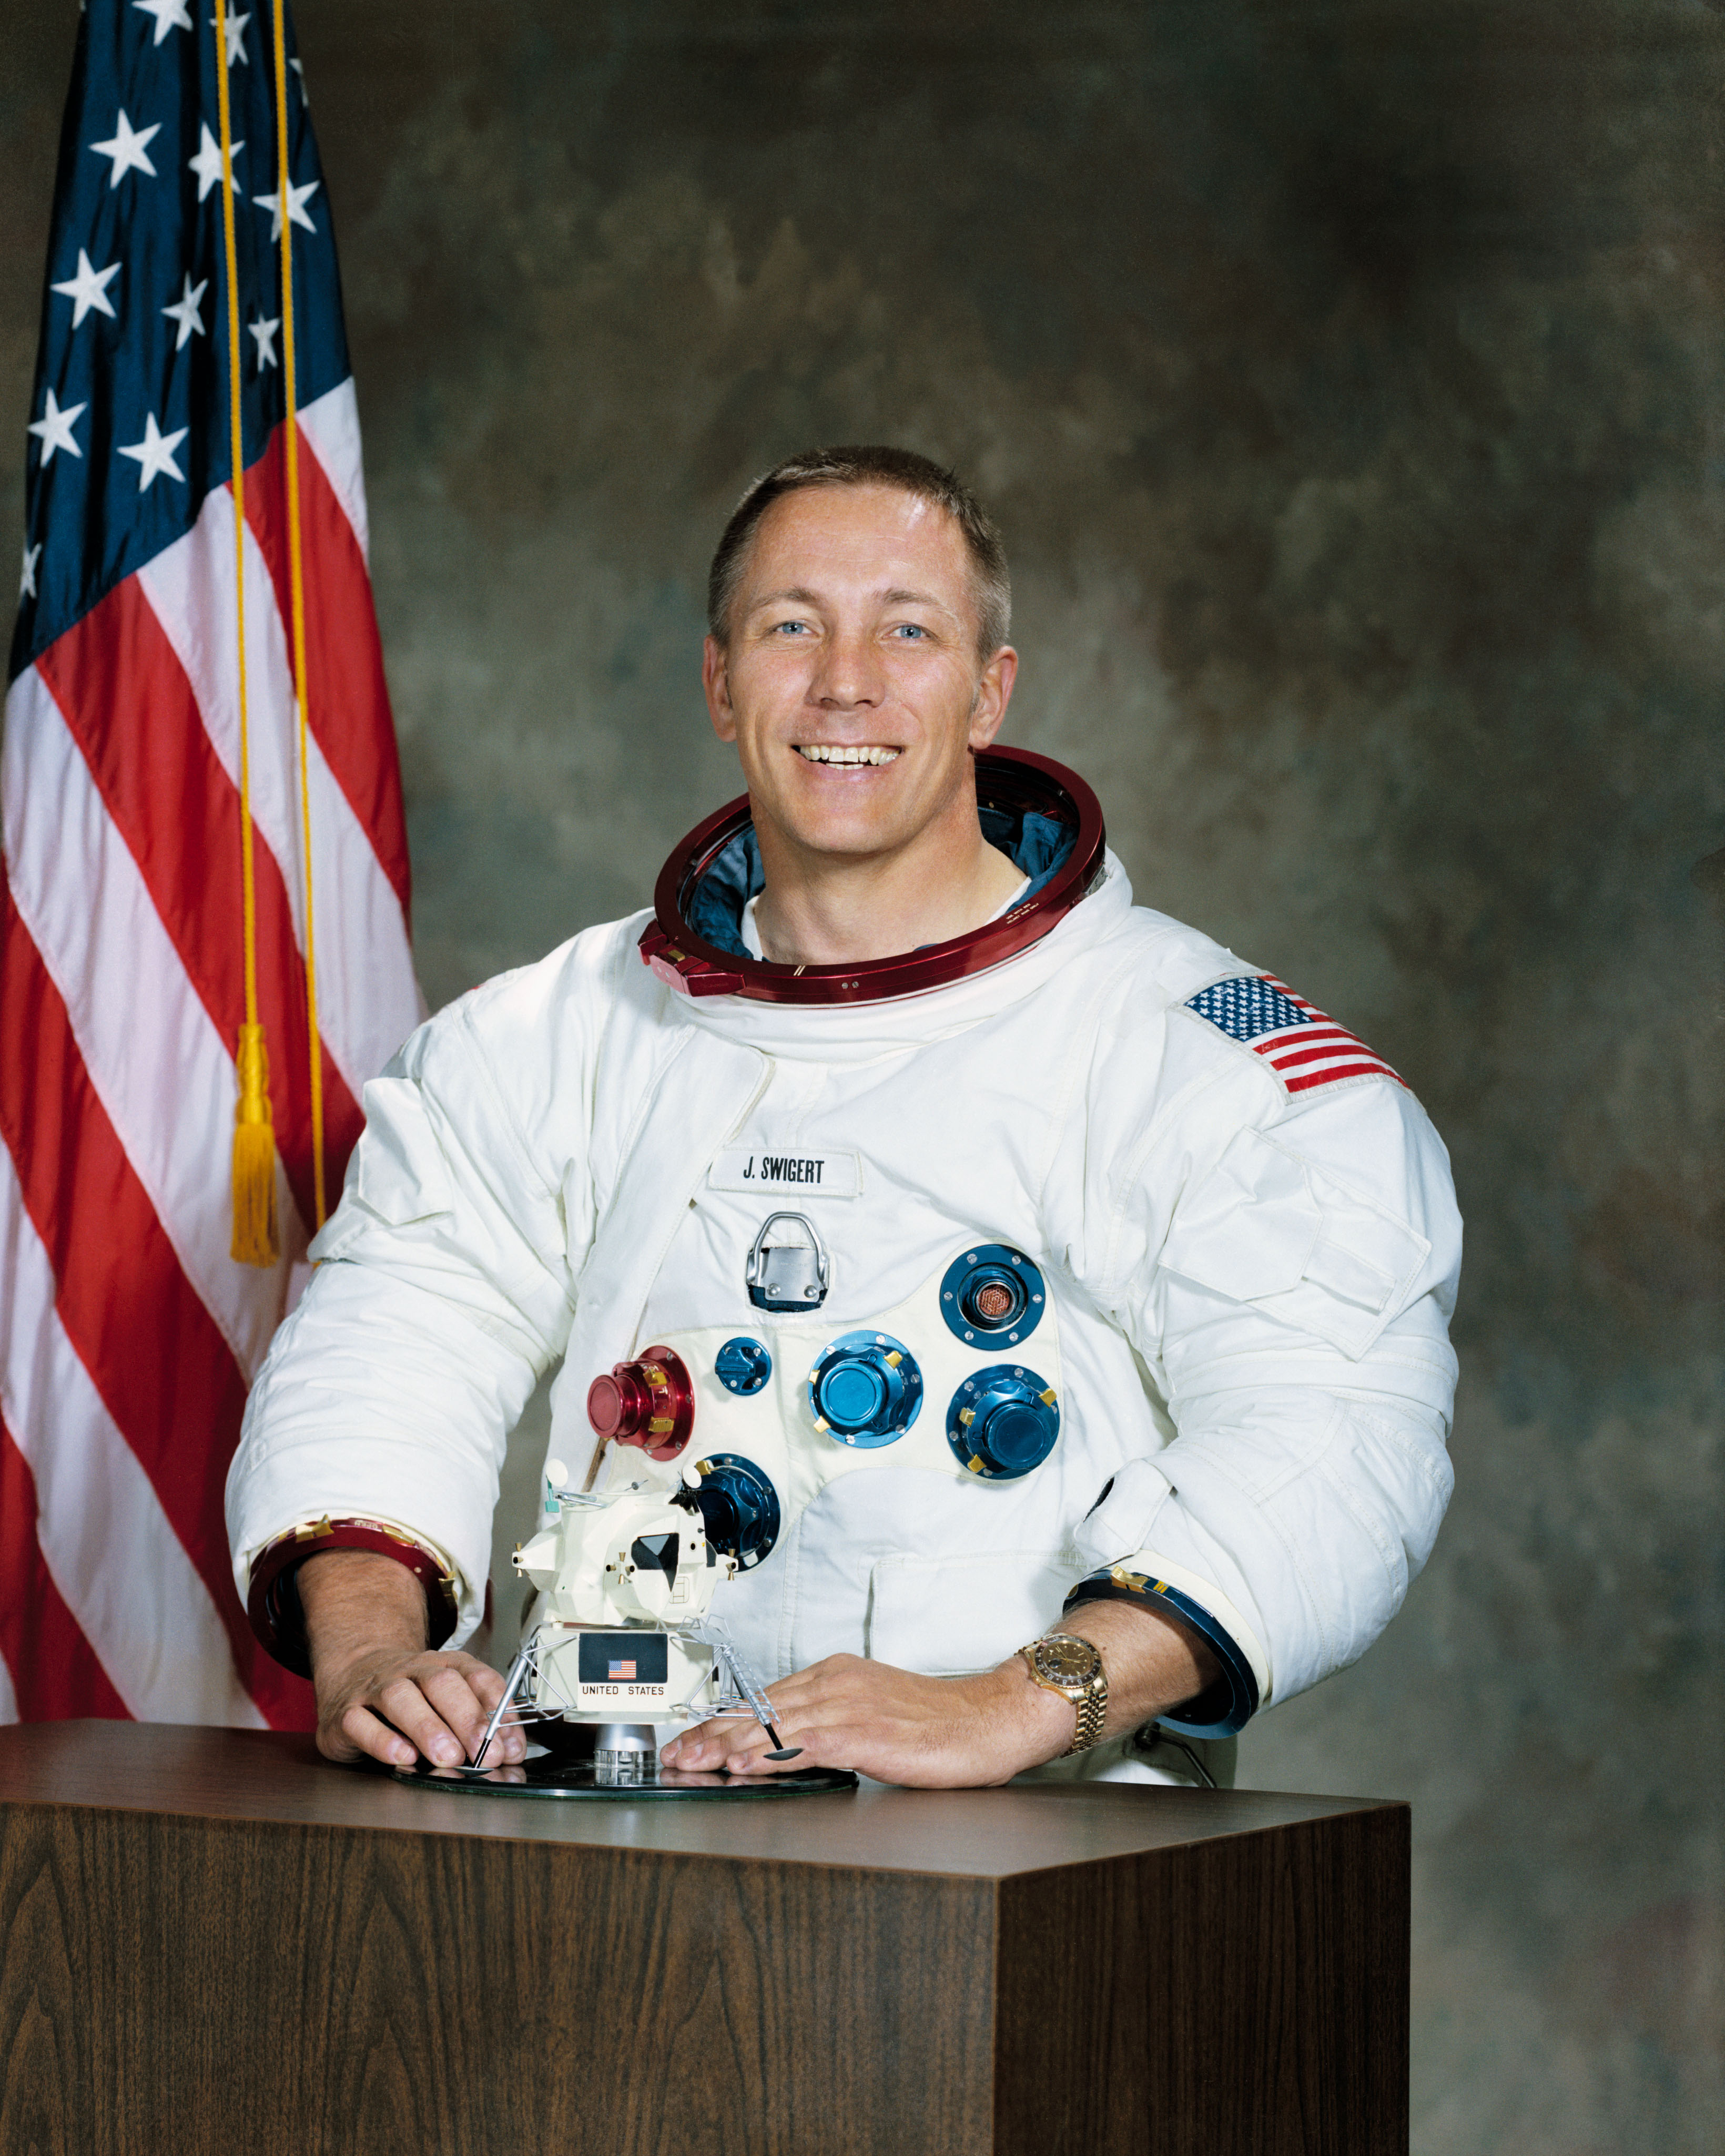 Apollo 13 - Wikipedia